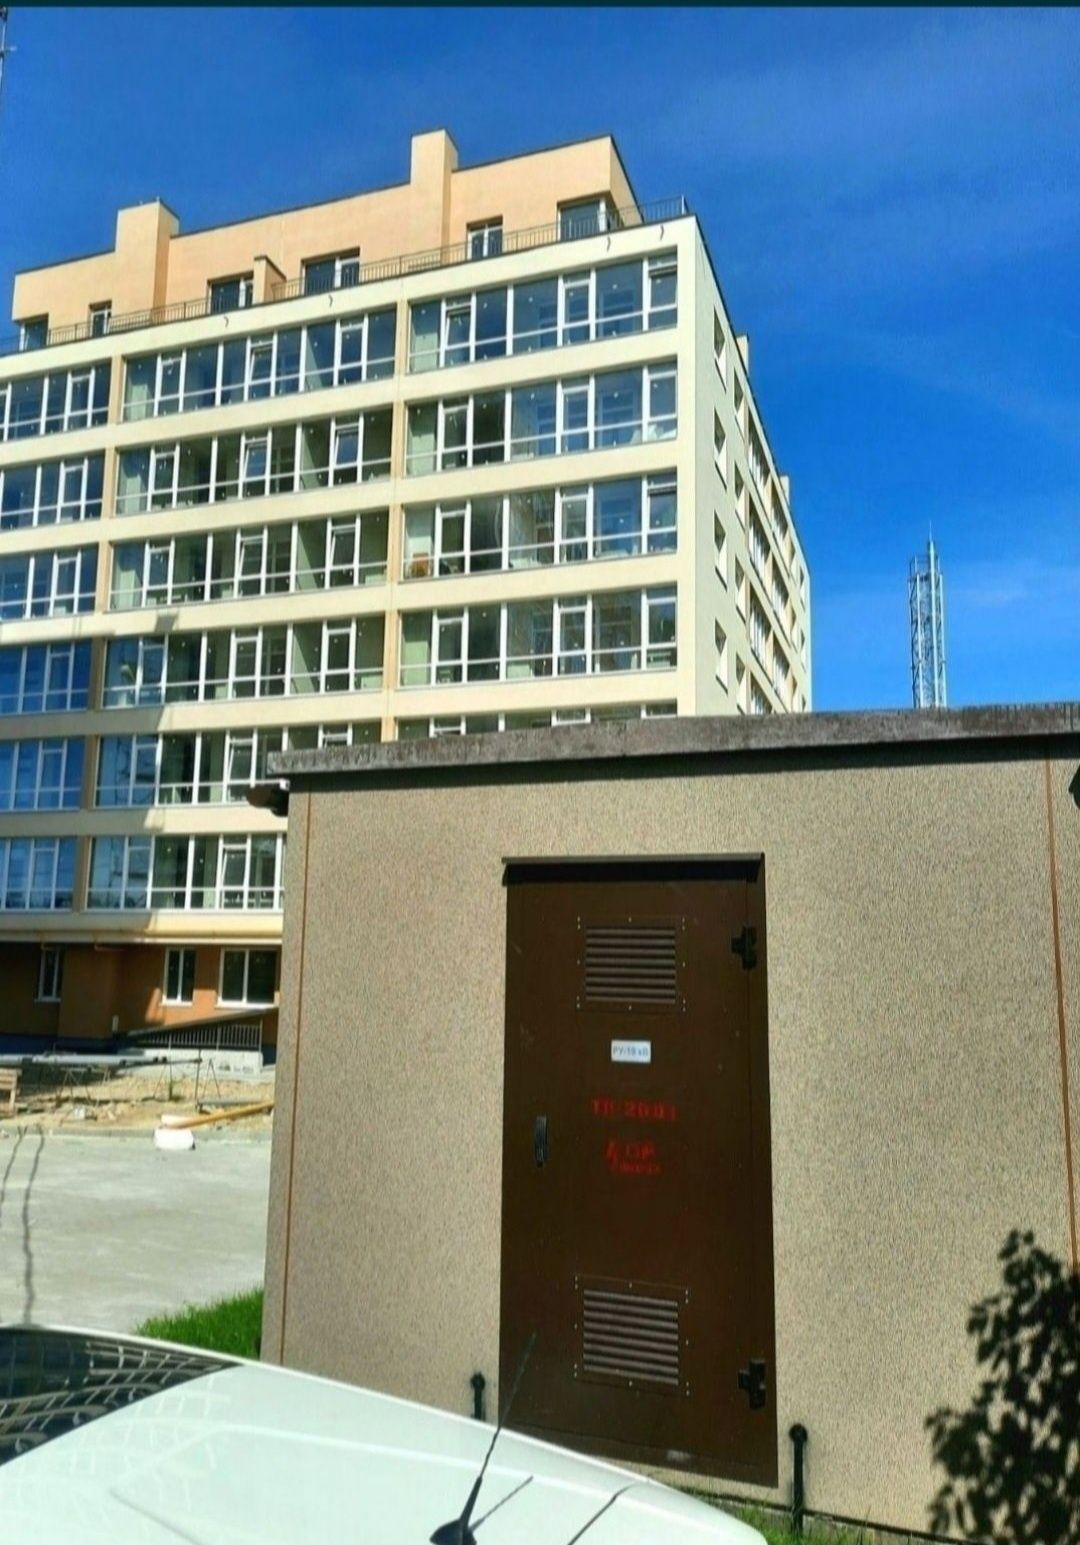 Продаж 2 кімнатної квартири новобуд Дубляни 74,6 м.кв. від власника.